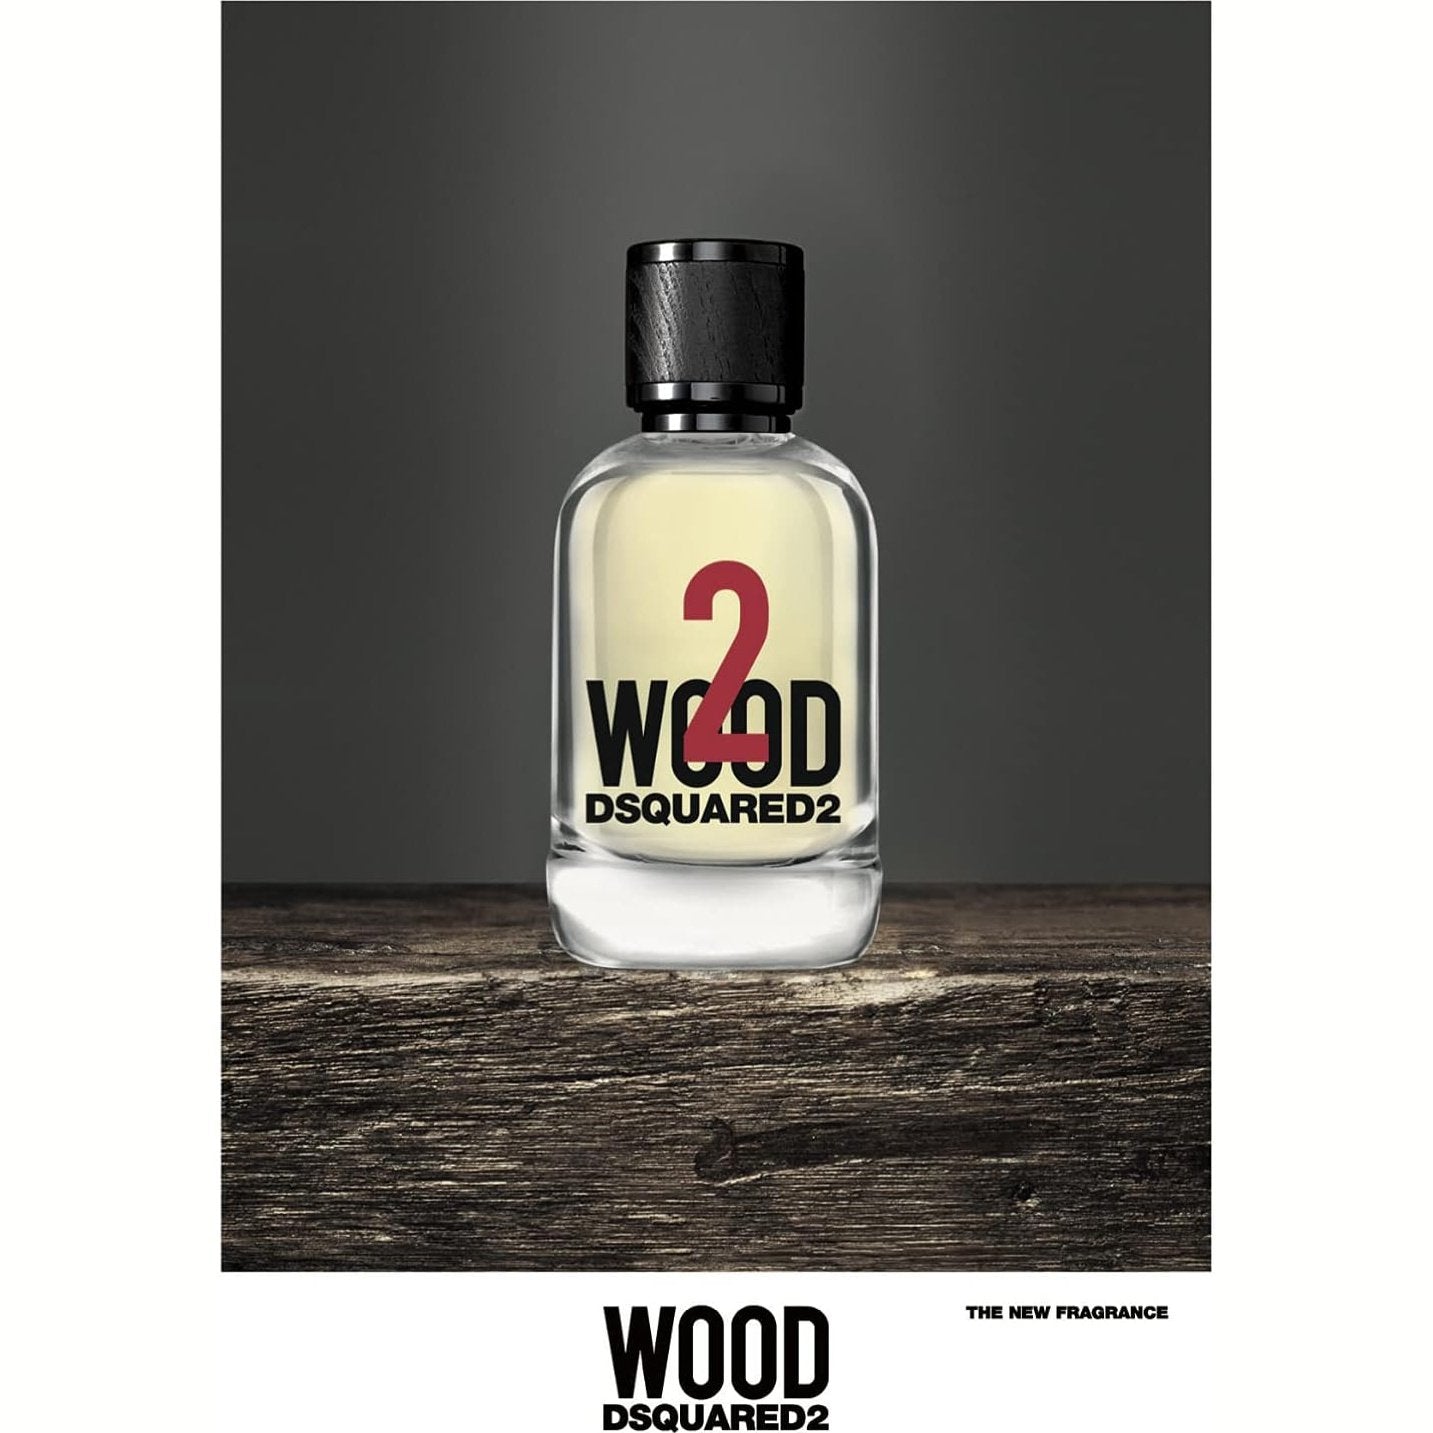 DSquared² 2 Wood Eau de Toilette 100ml Spray